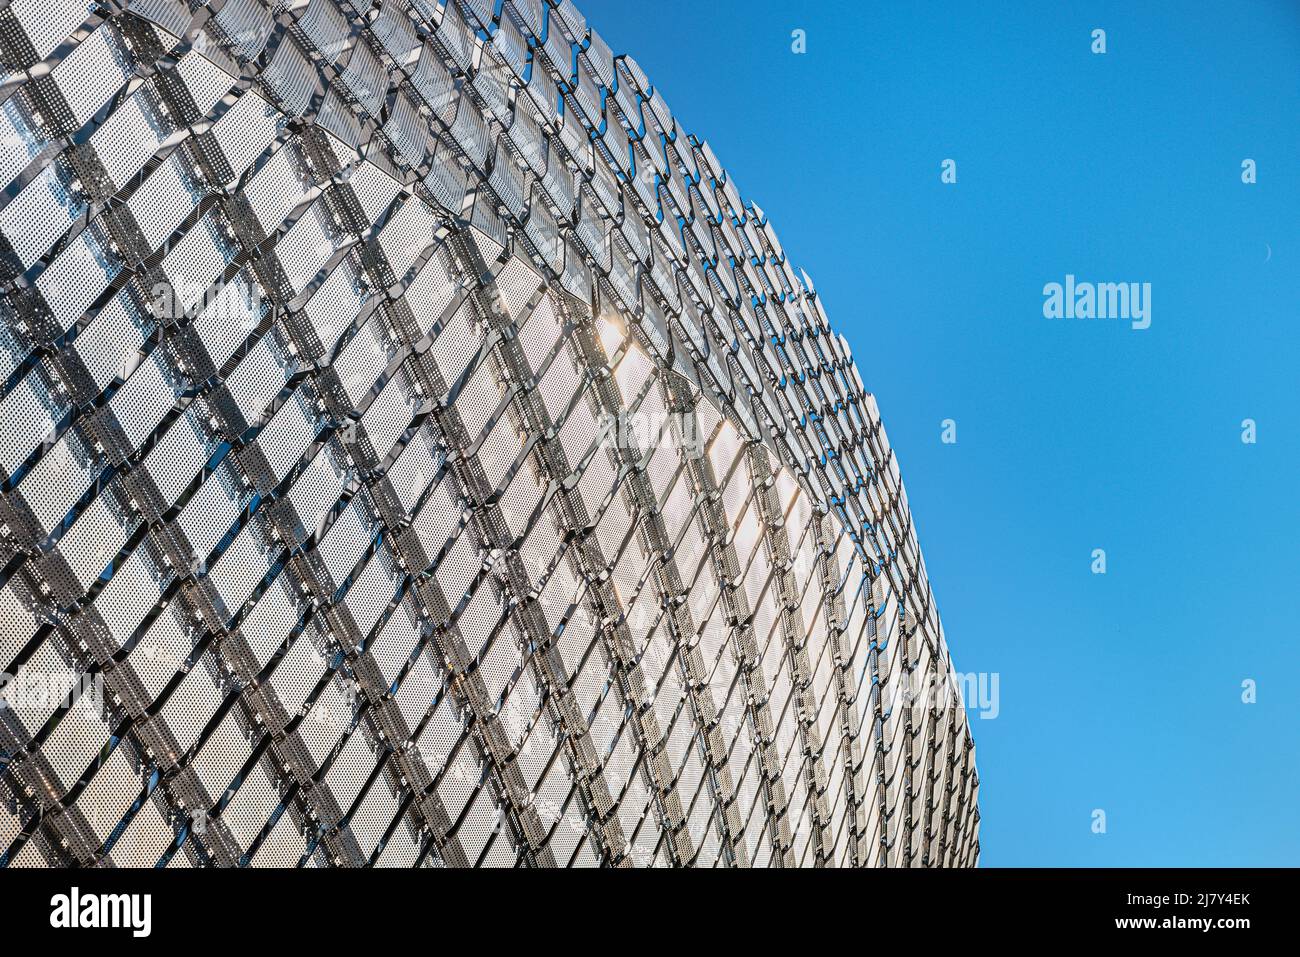 Moderne Metallfassadendetails zeigen, wie moderne Gebäude kalt und seelenlos werden. Nahaufnahme von quadratischen Paneelen in einem modernen Gebäude Stockfoto